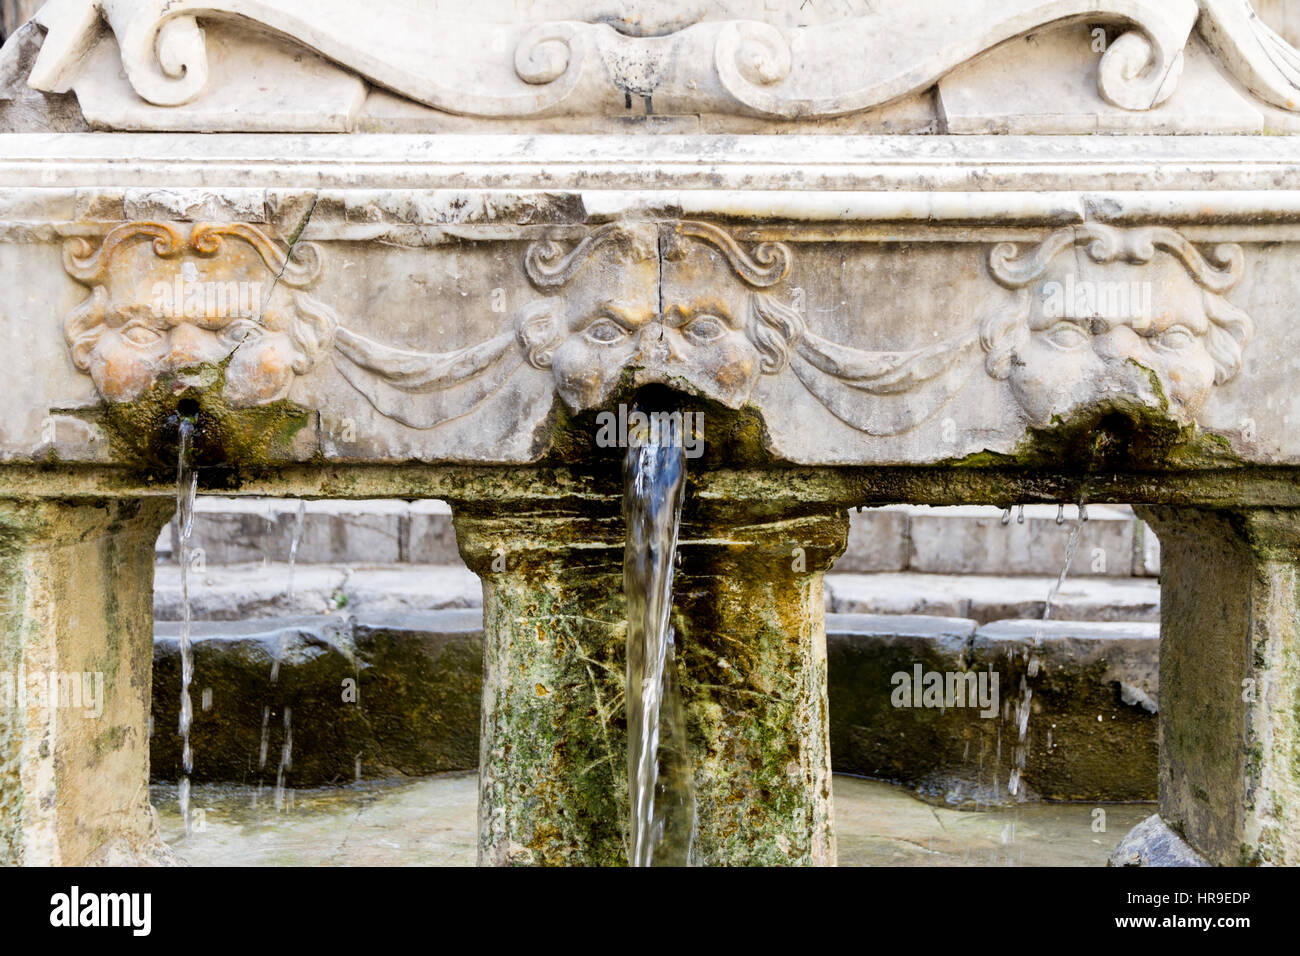 The Garraffello fountain in the Vucciria quarter of Palermo Stock Photo